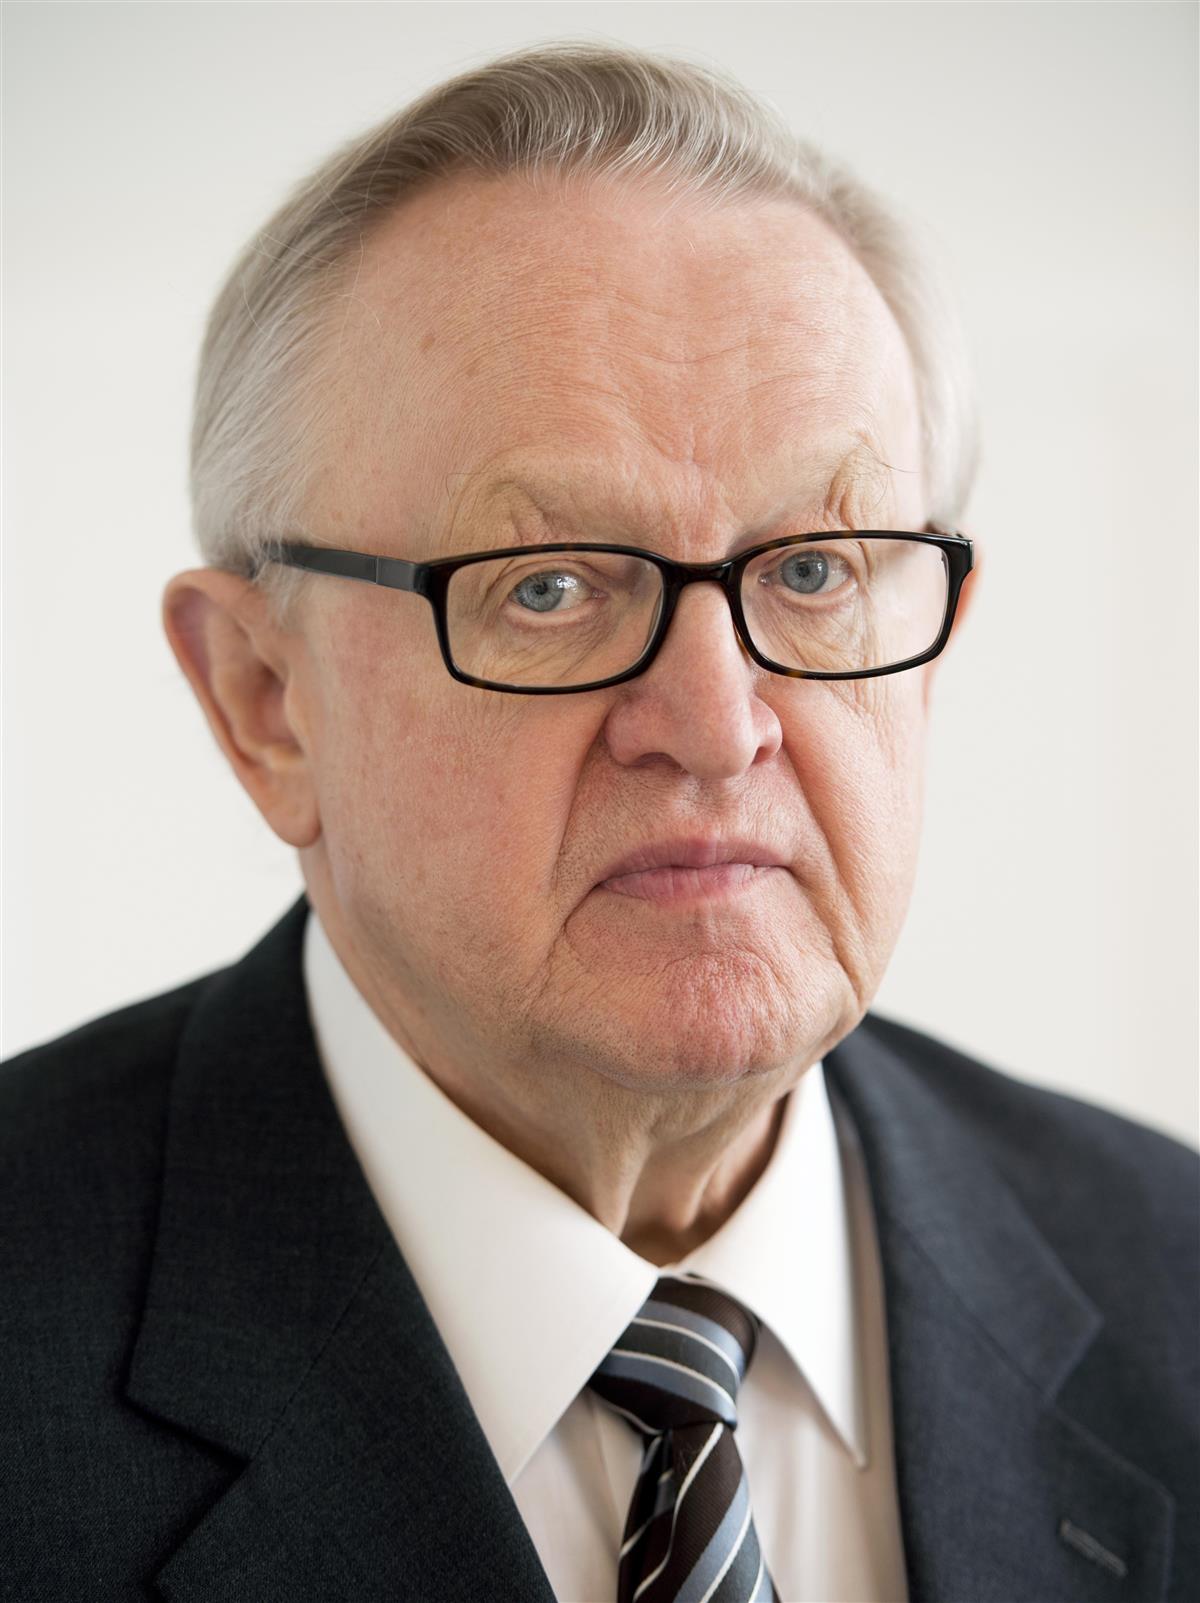 Eldre mann med briller og grått hår, i dress og slips - Klikk for stort bilde